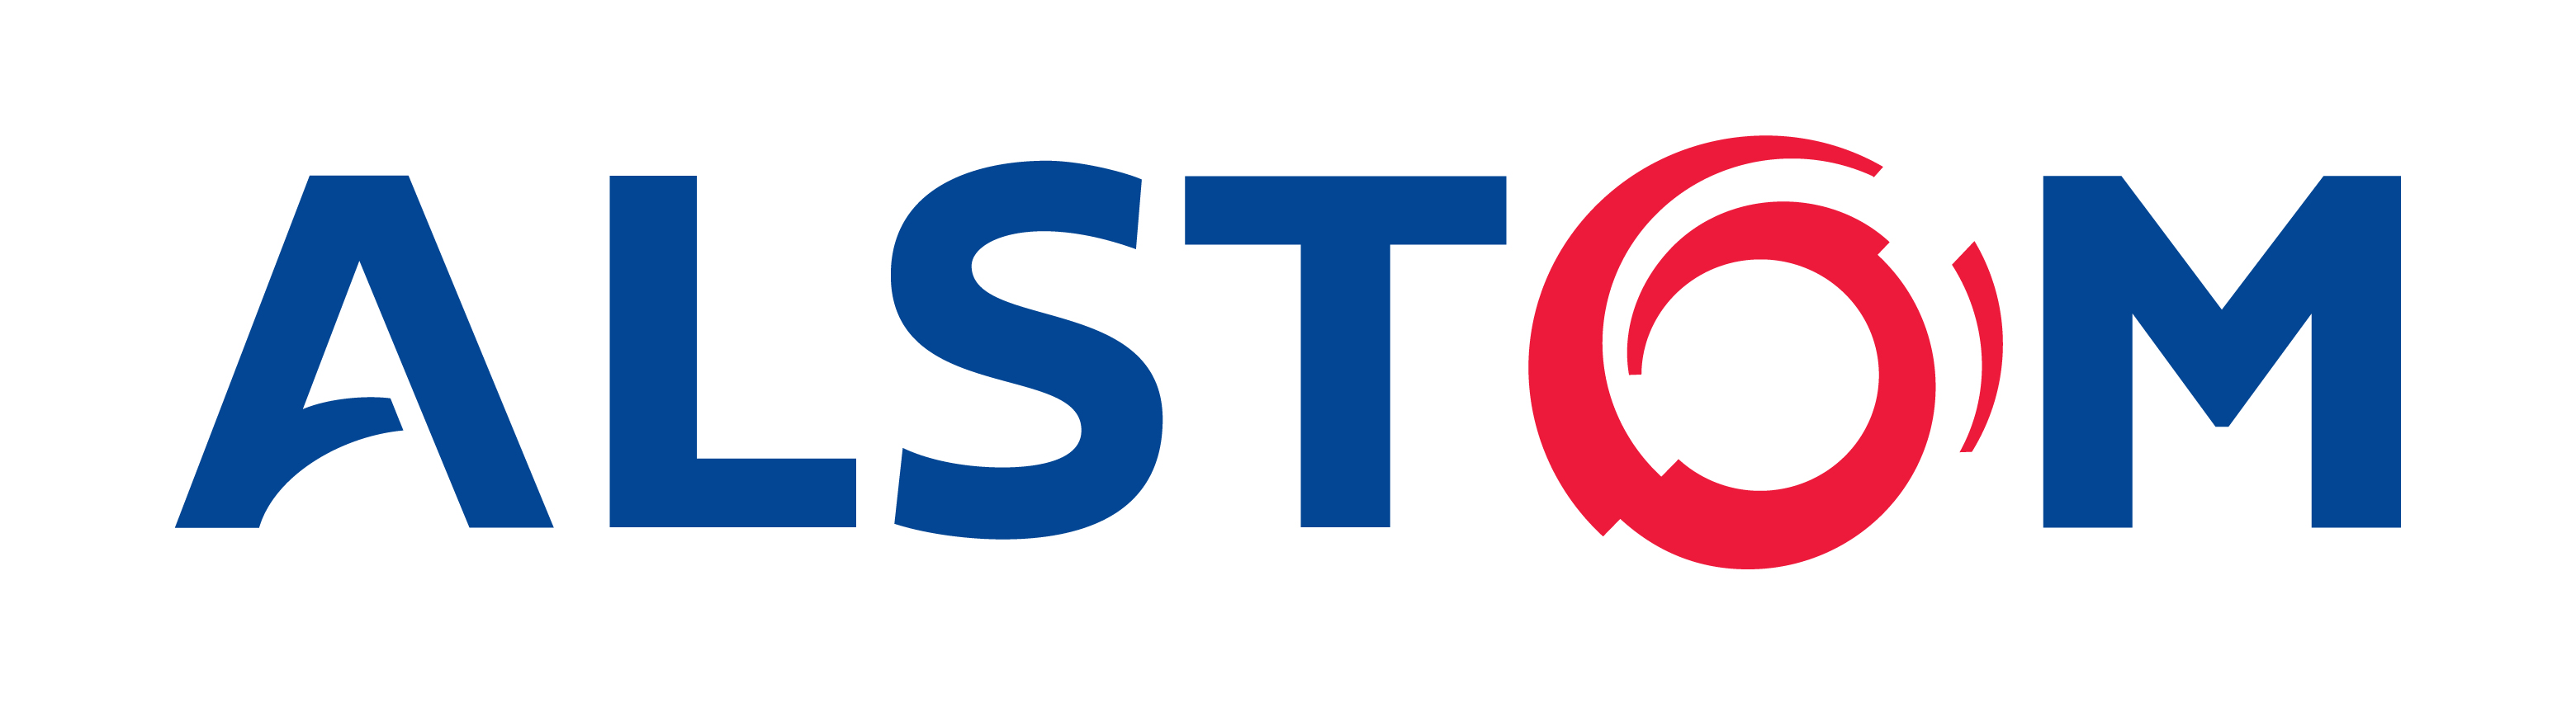 Alstom logo.jpg - 212.83 kB